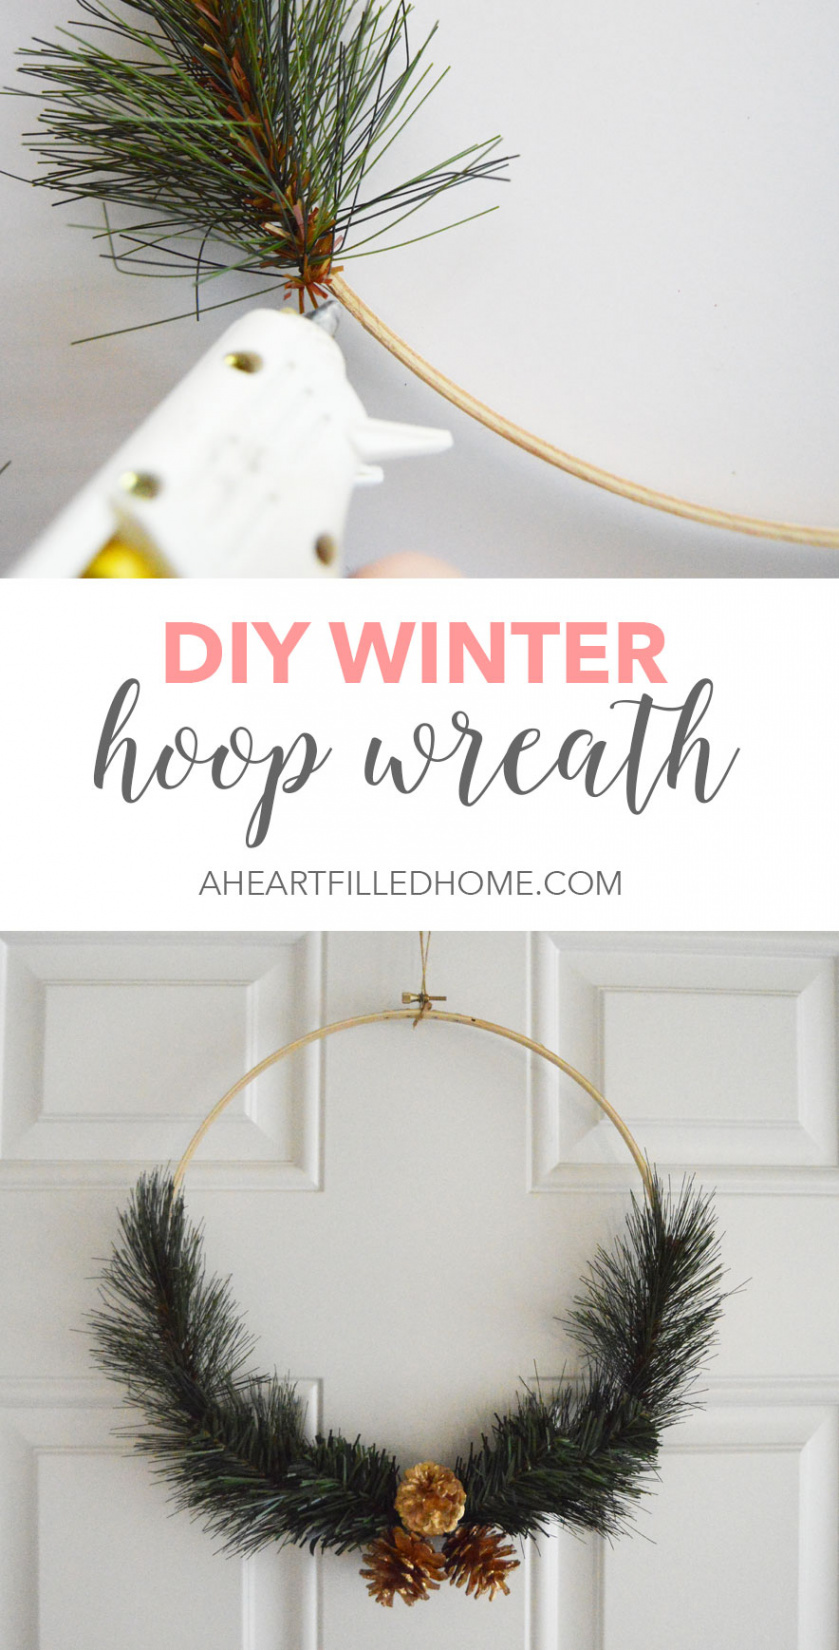 DIY Winter Hoop Wreath - A Heart Filled Home  DIY & Home Decor